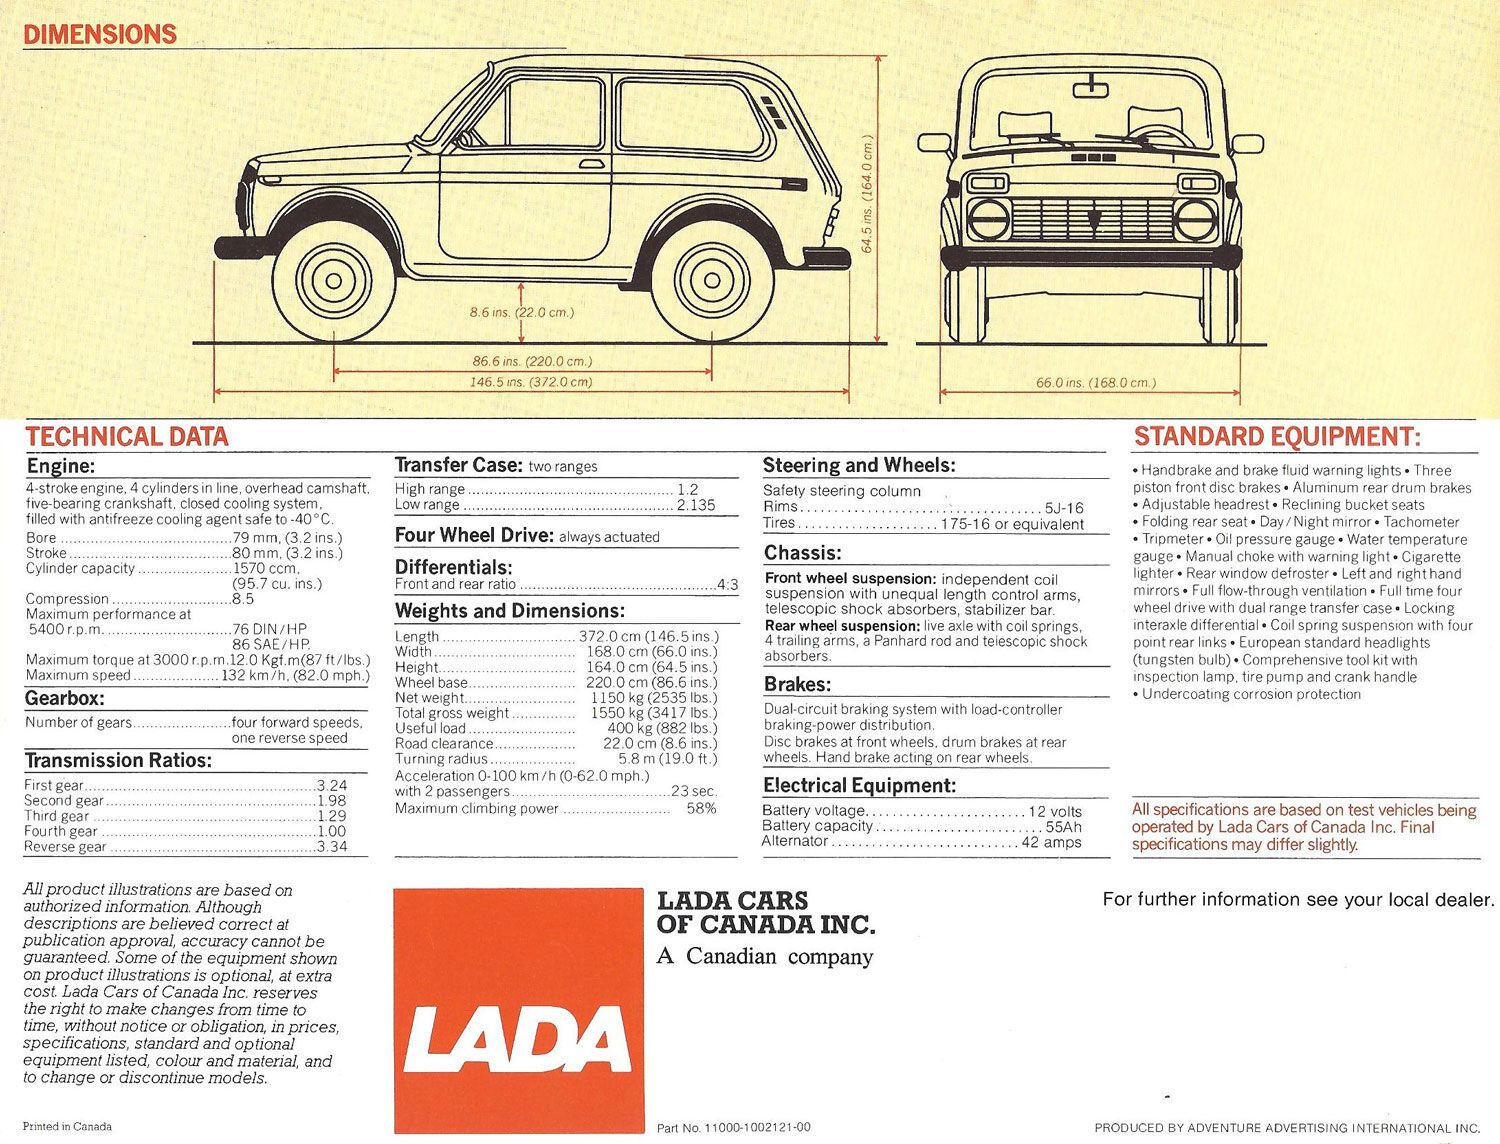 Брошура канадского дилера Lada